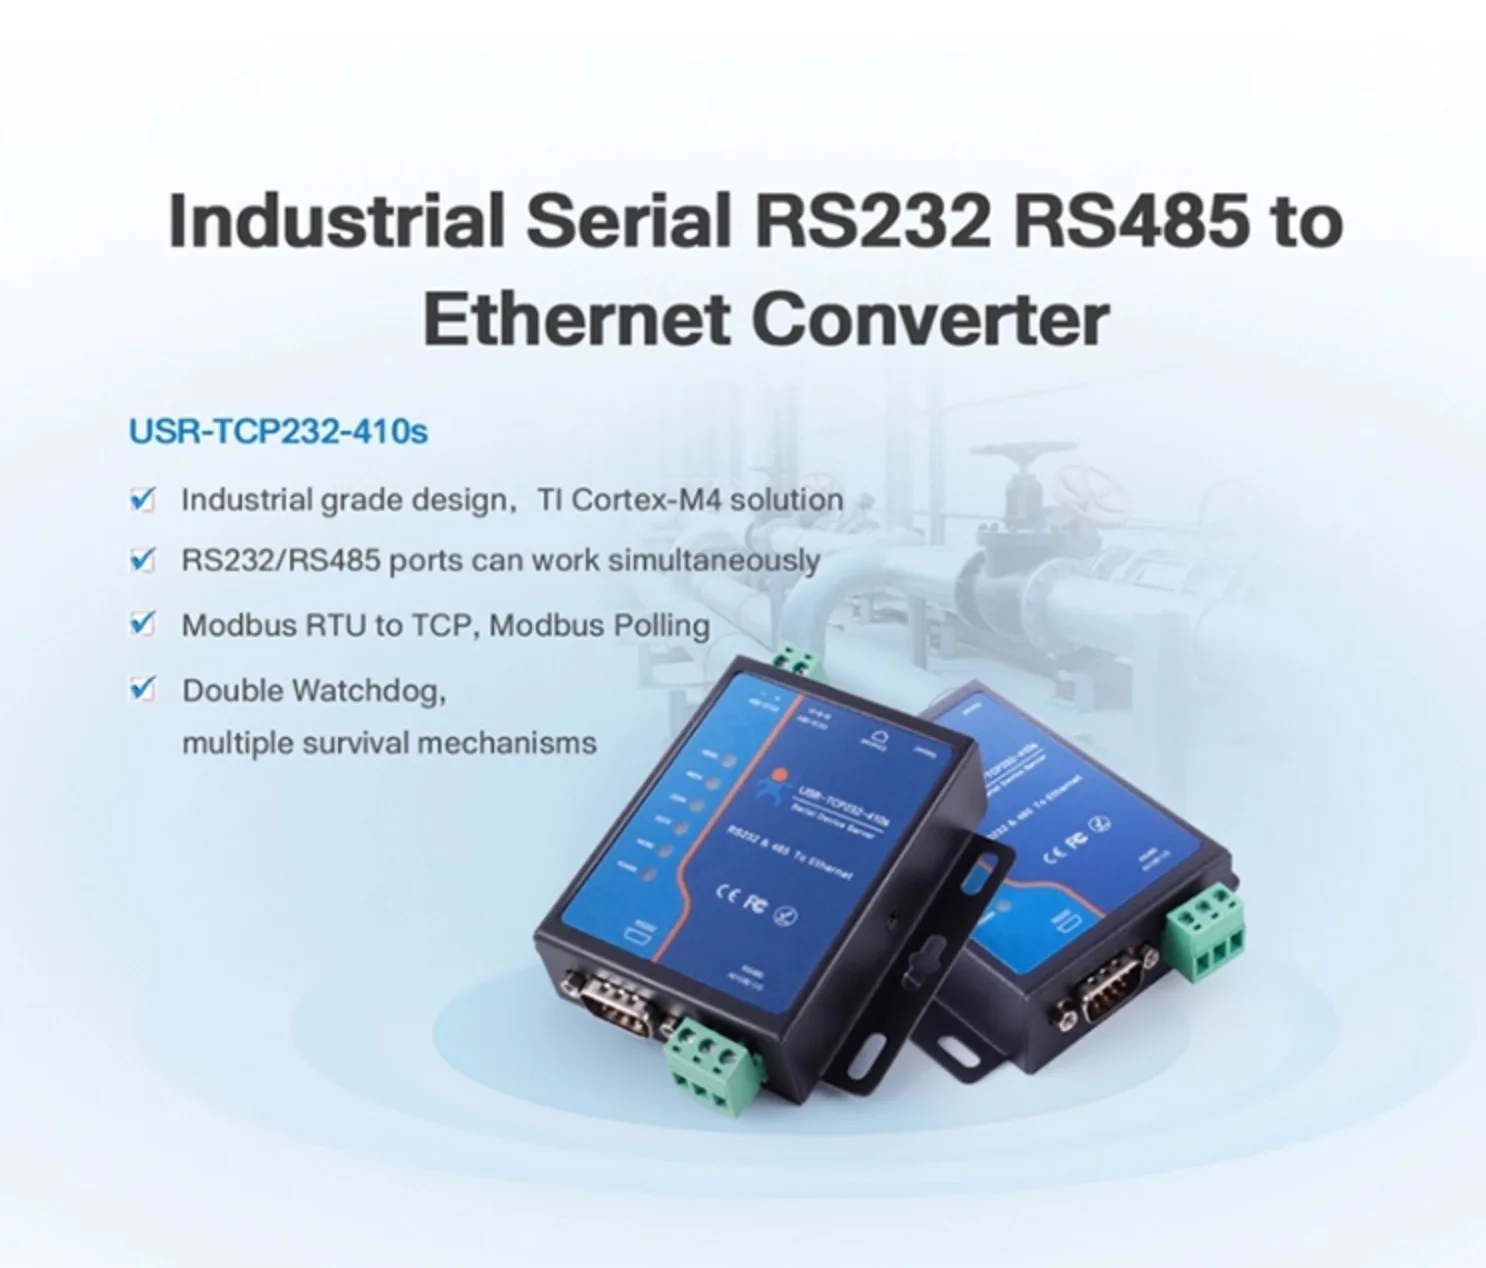 USR-TCP232-410S последовательный в Ethernet конвертер Modbus RTU в TCP промышленный Серийный RS232 RS485 в Ethernet конвертер Модуль